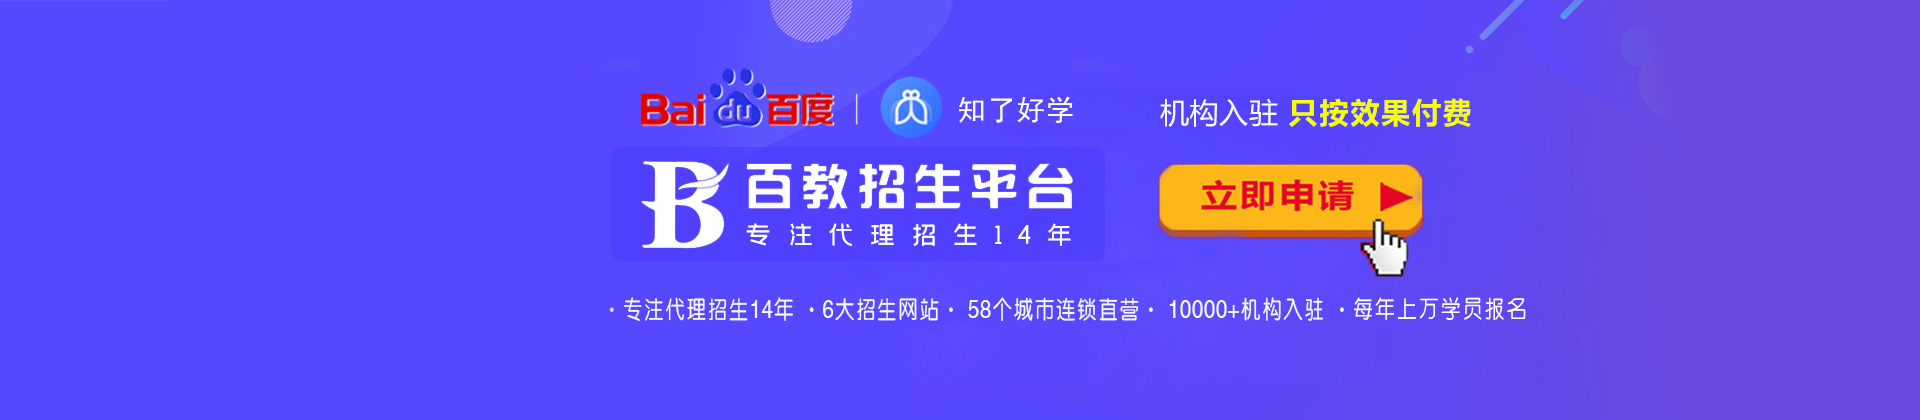 天津百教网-中国硬实力招生平台